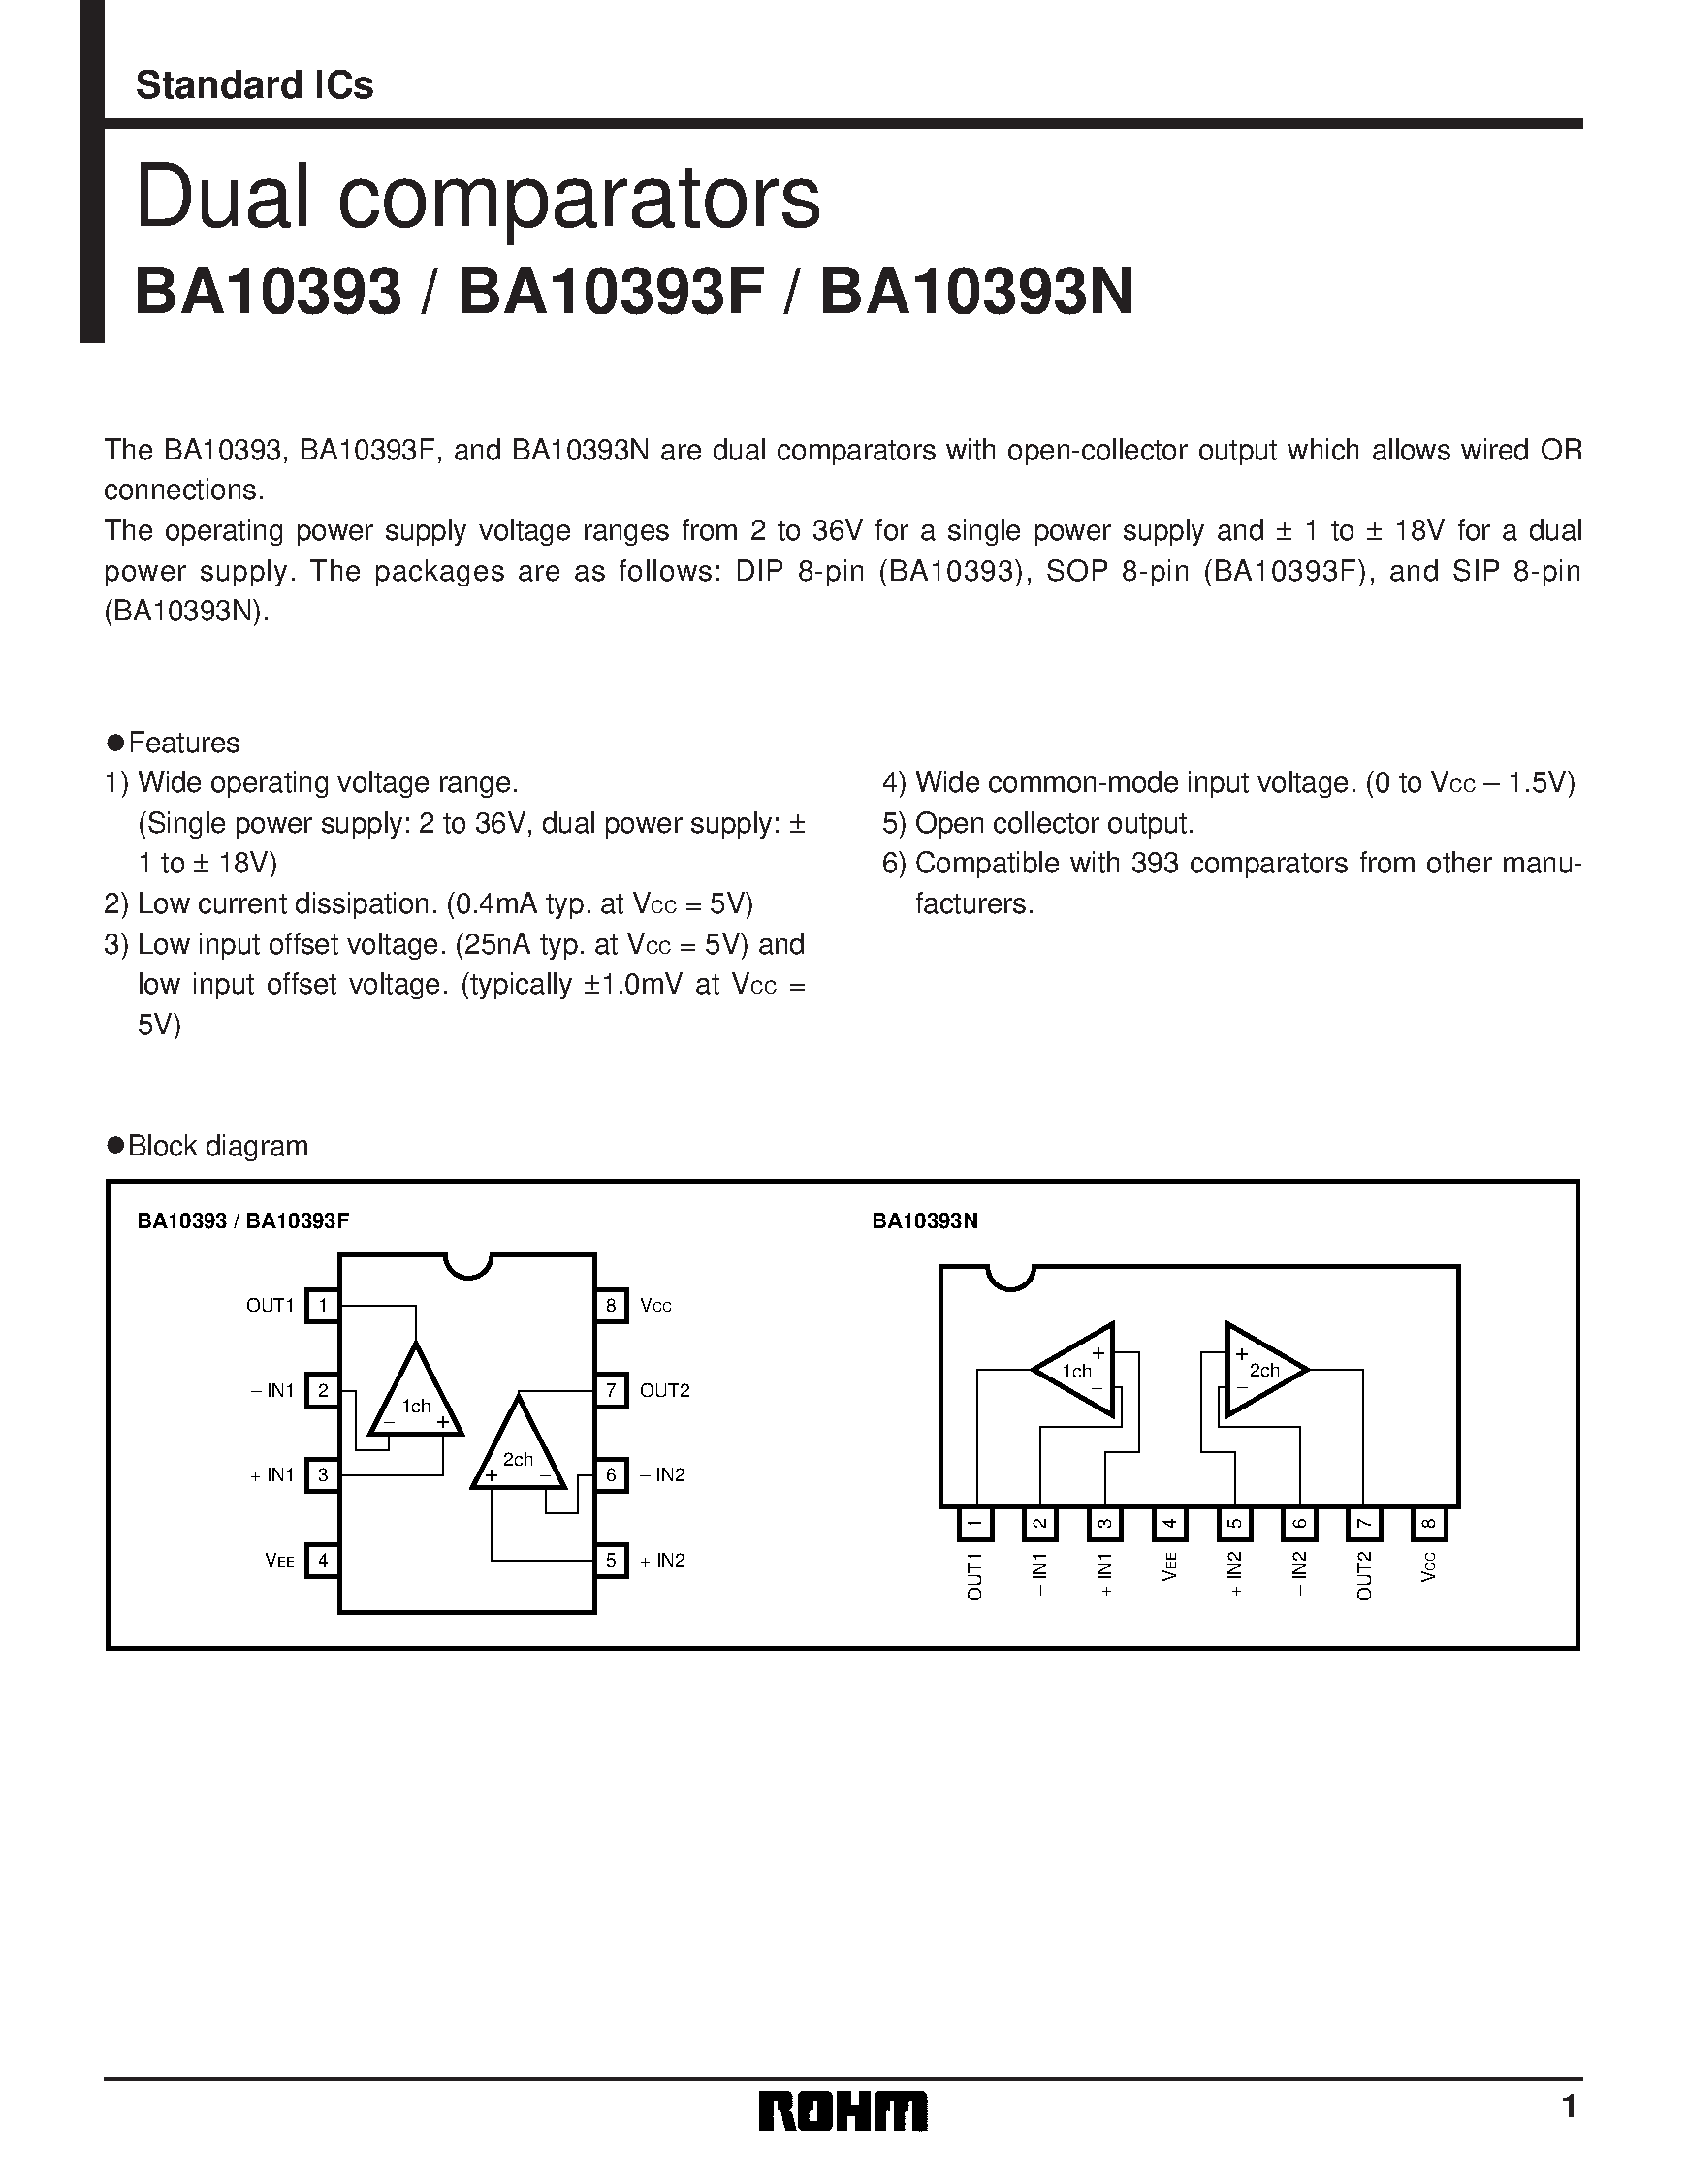 Даташит BA10393N - Dual comparators страница 1